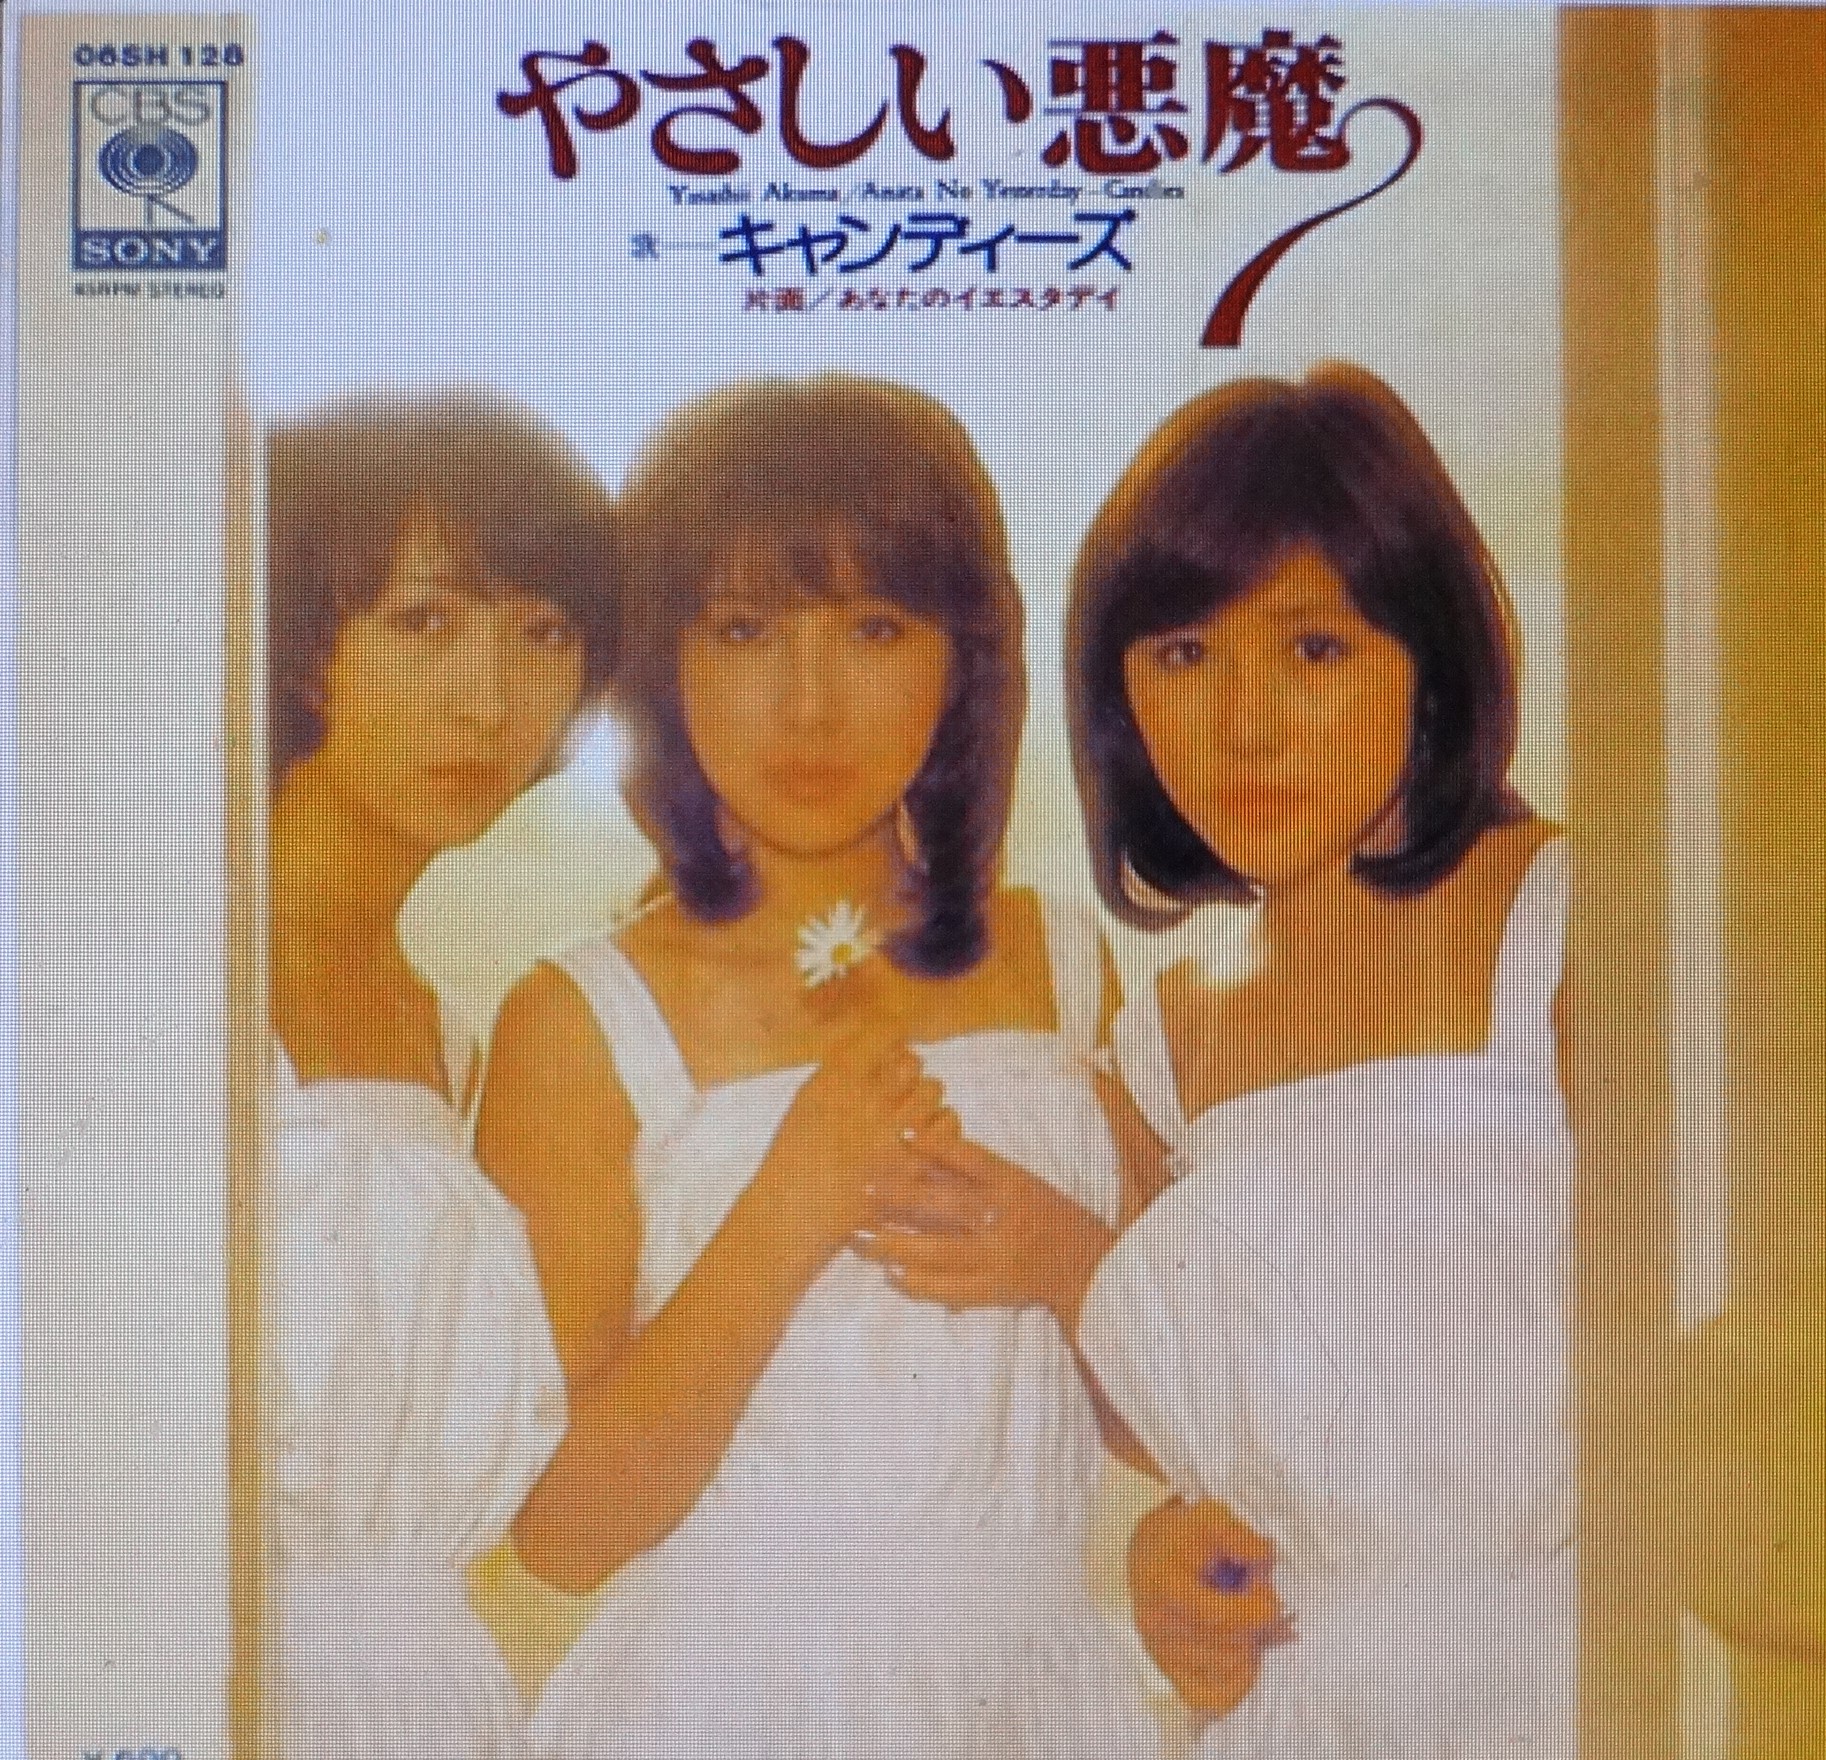 Webvanda 1970年代アイドルのライヴ アルバム キャンディーズ